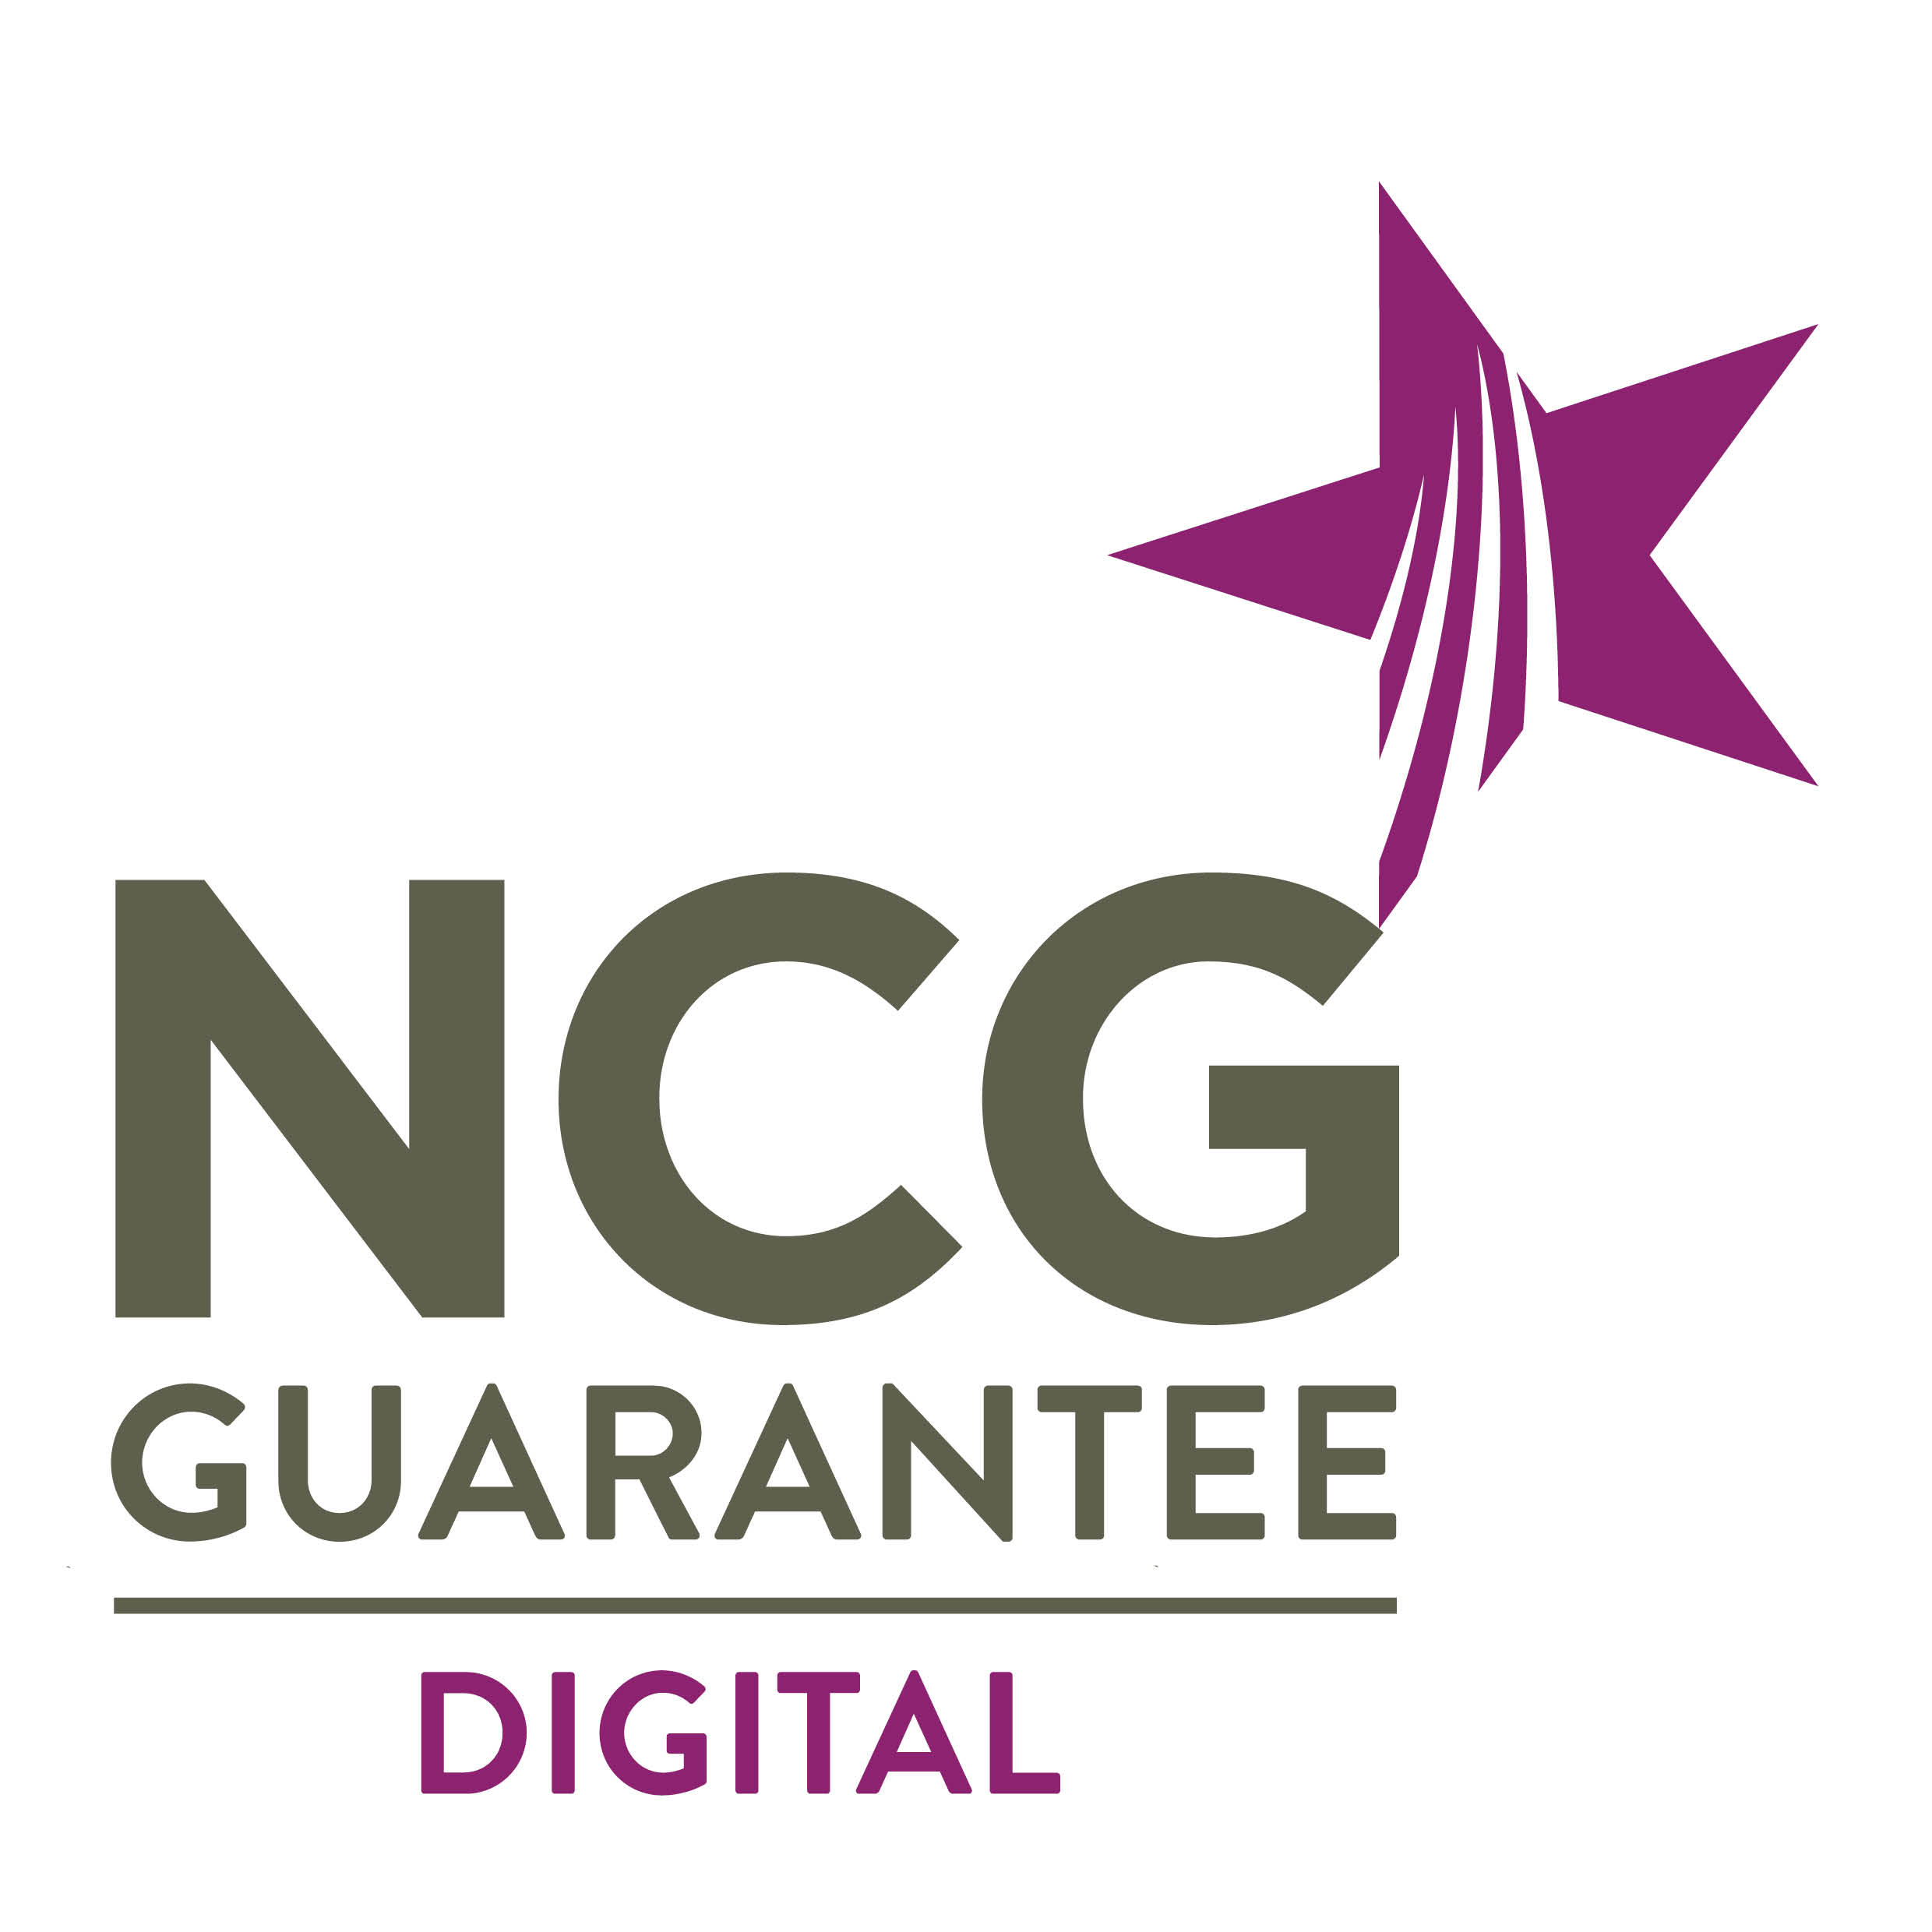 NCG Guarantee Digital Logo